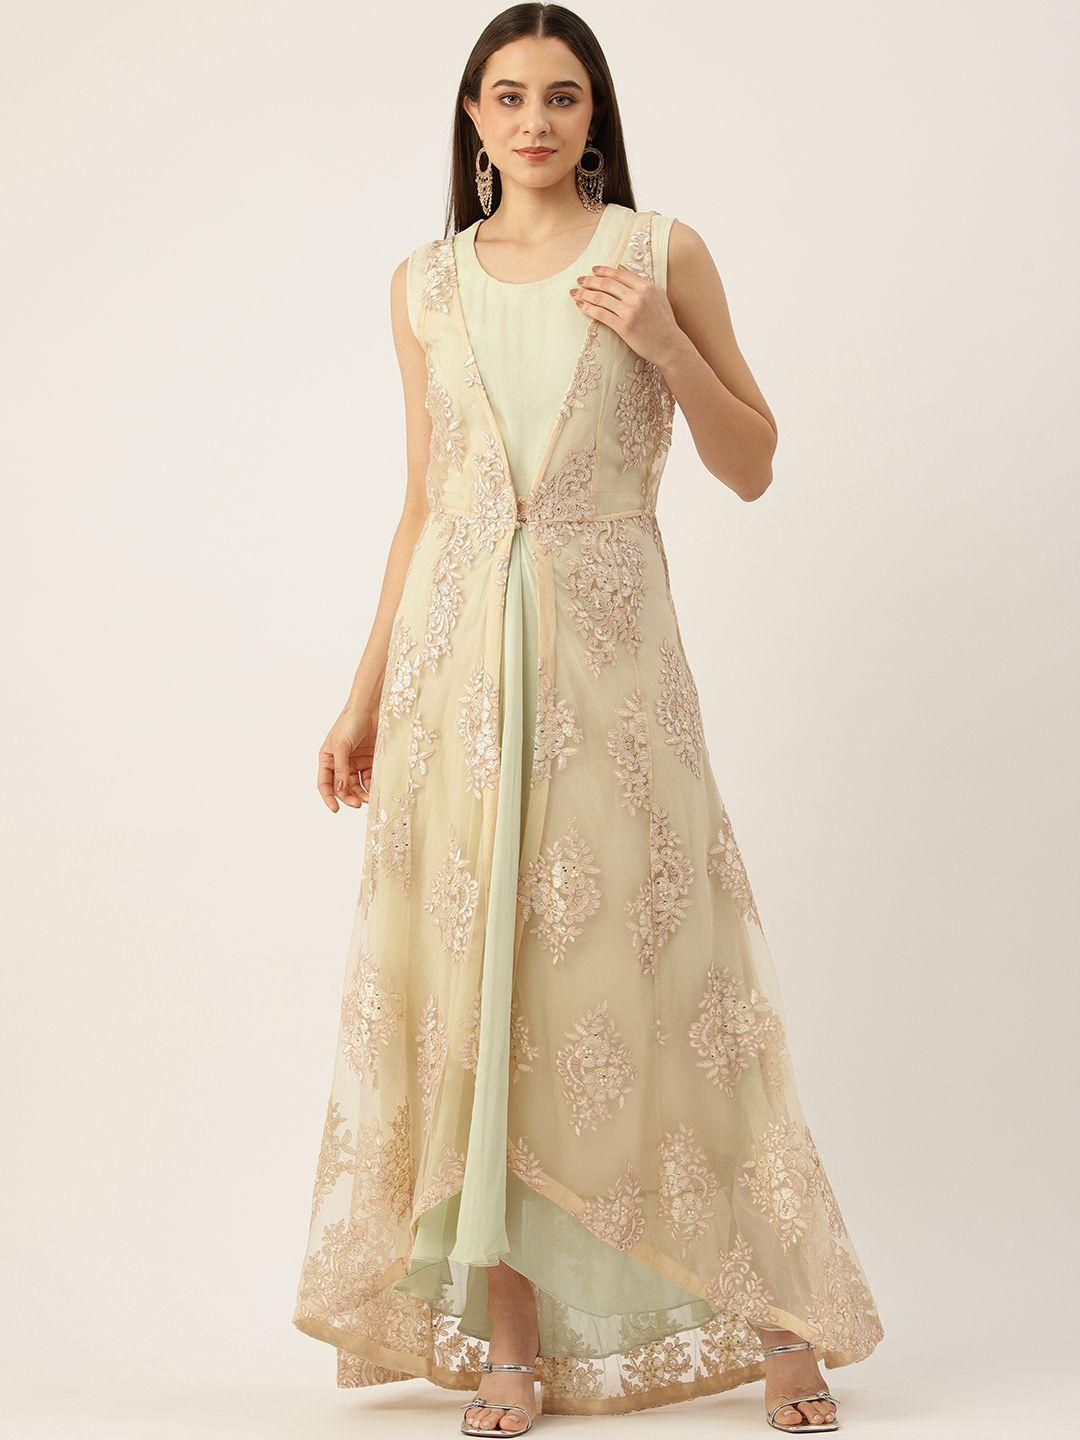 simaaya ethnic gown with embellished shrug